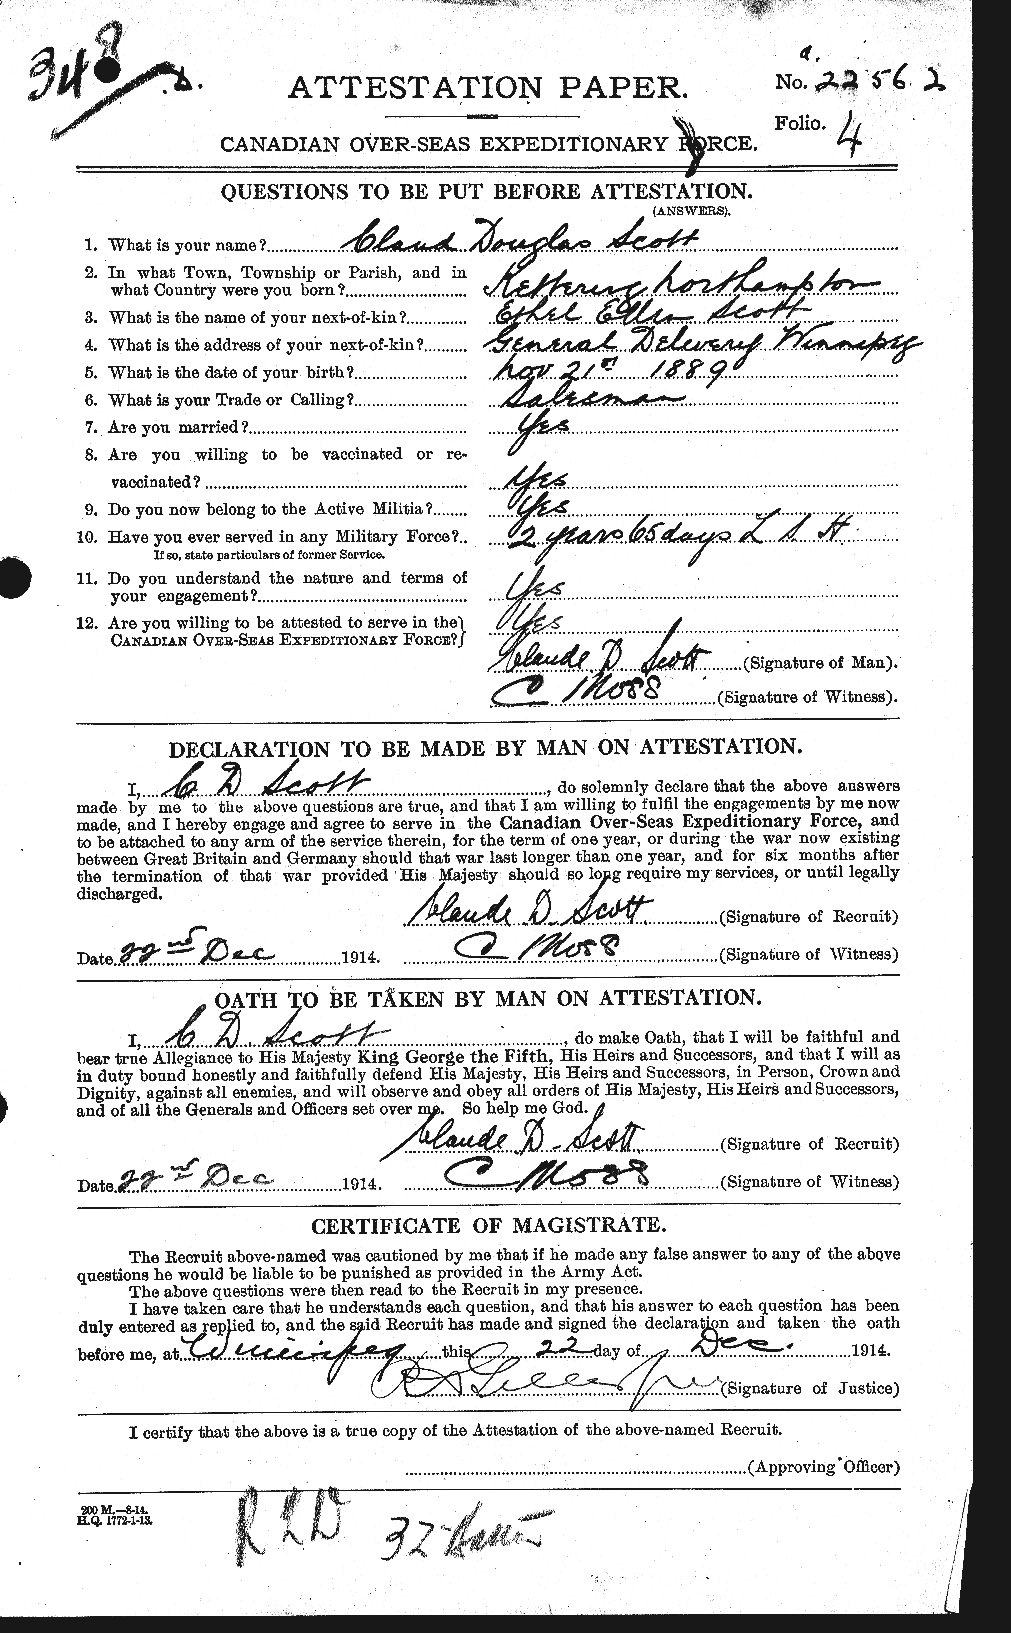 Dossiers du Personnel de la Première Guerre mondiale - CEC 085633a